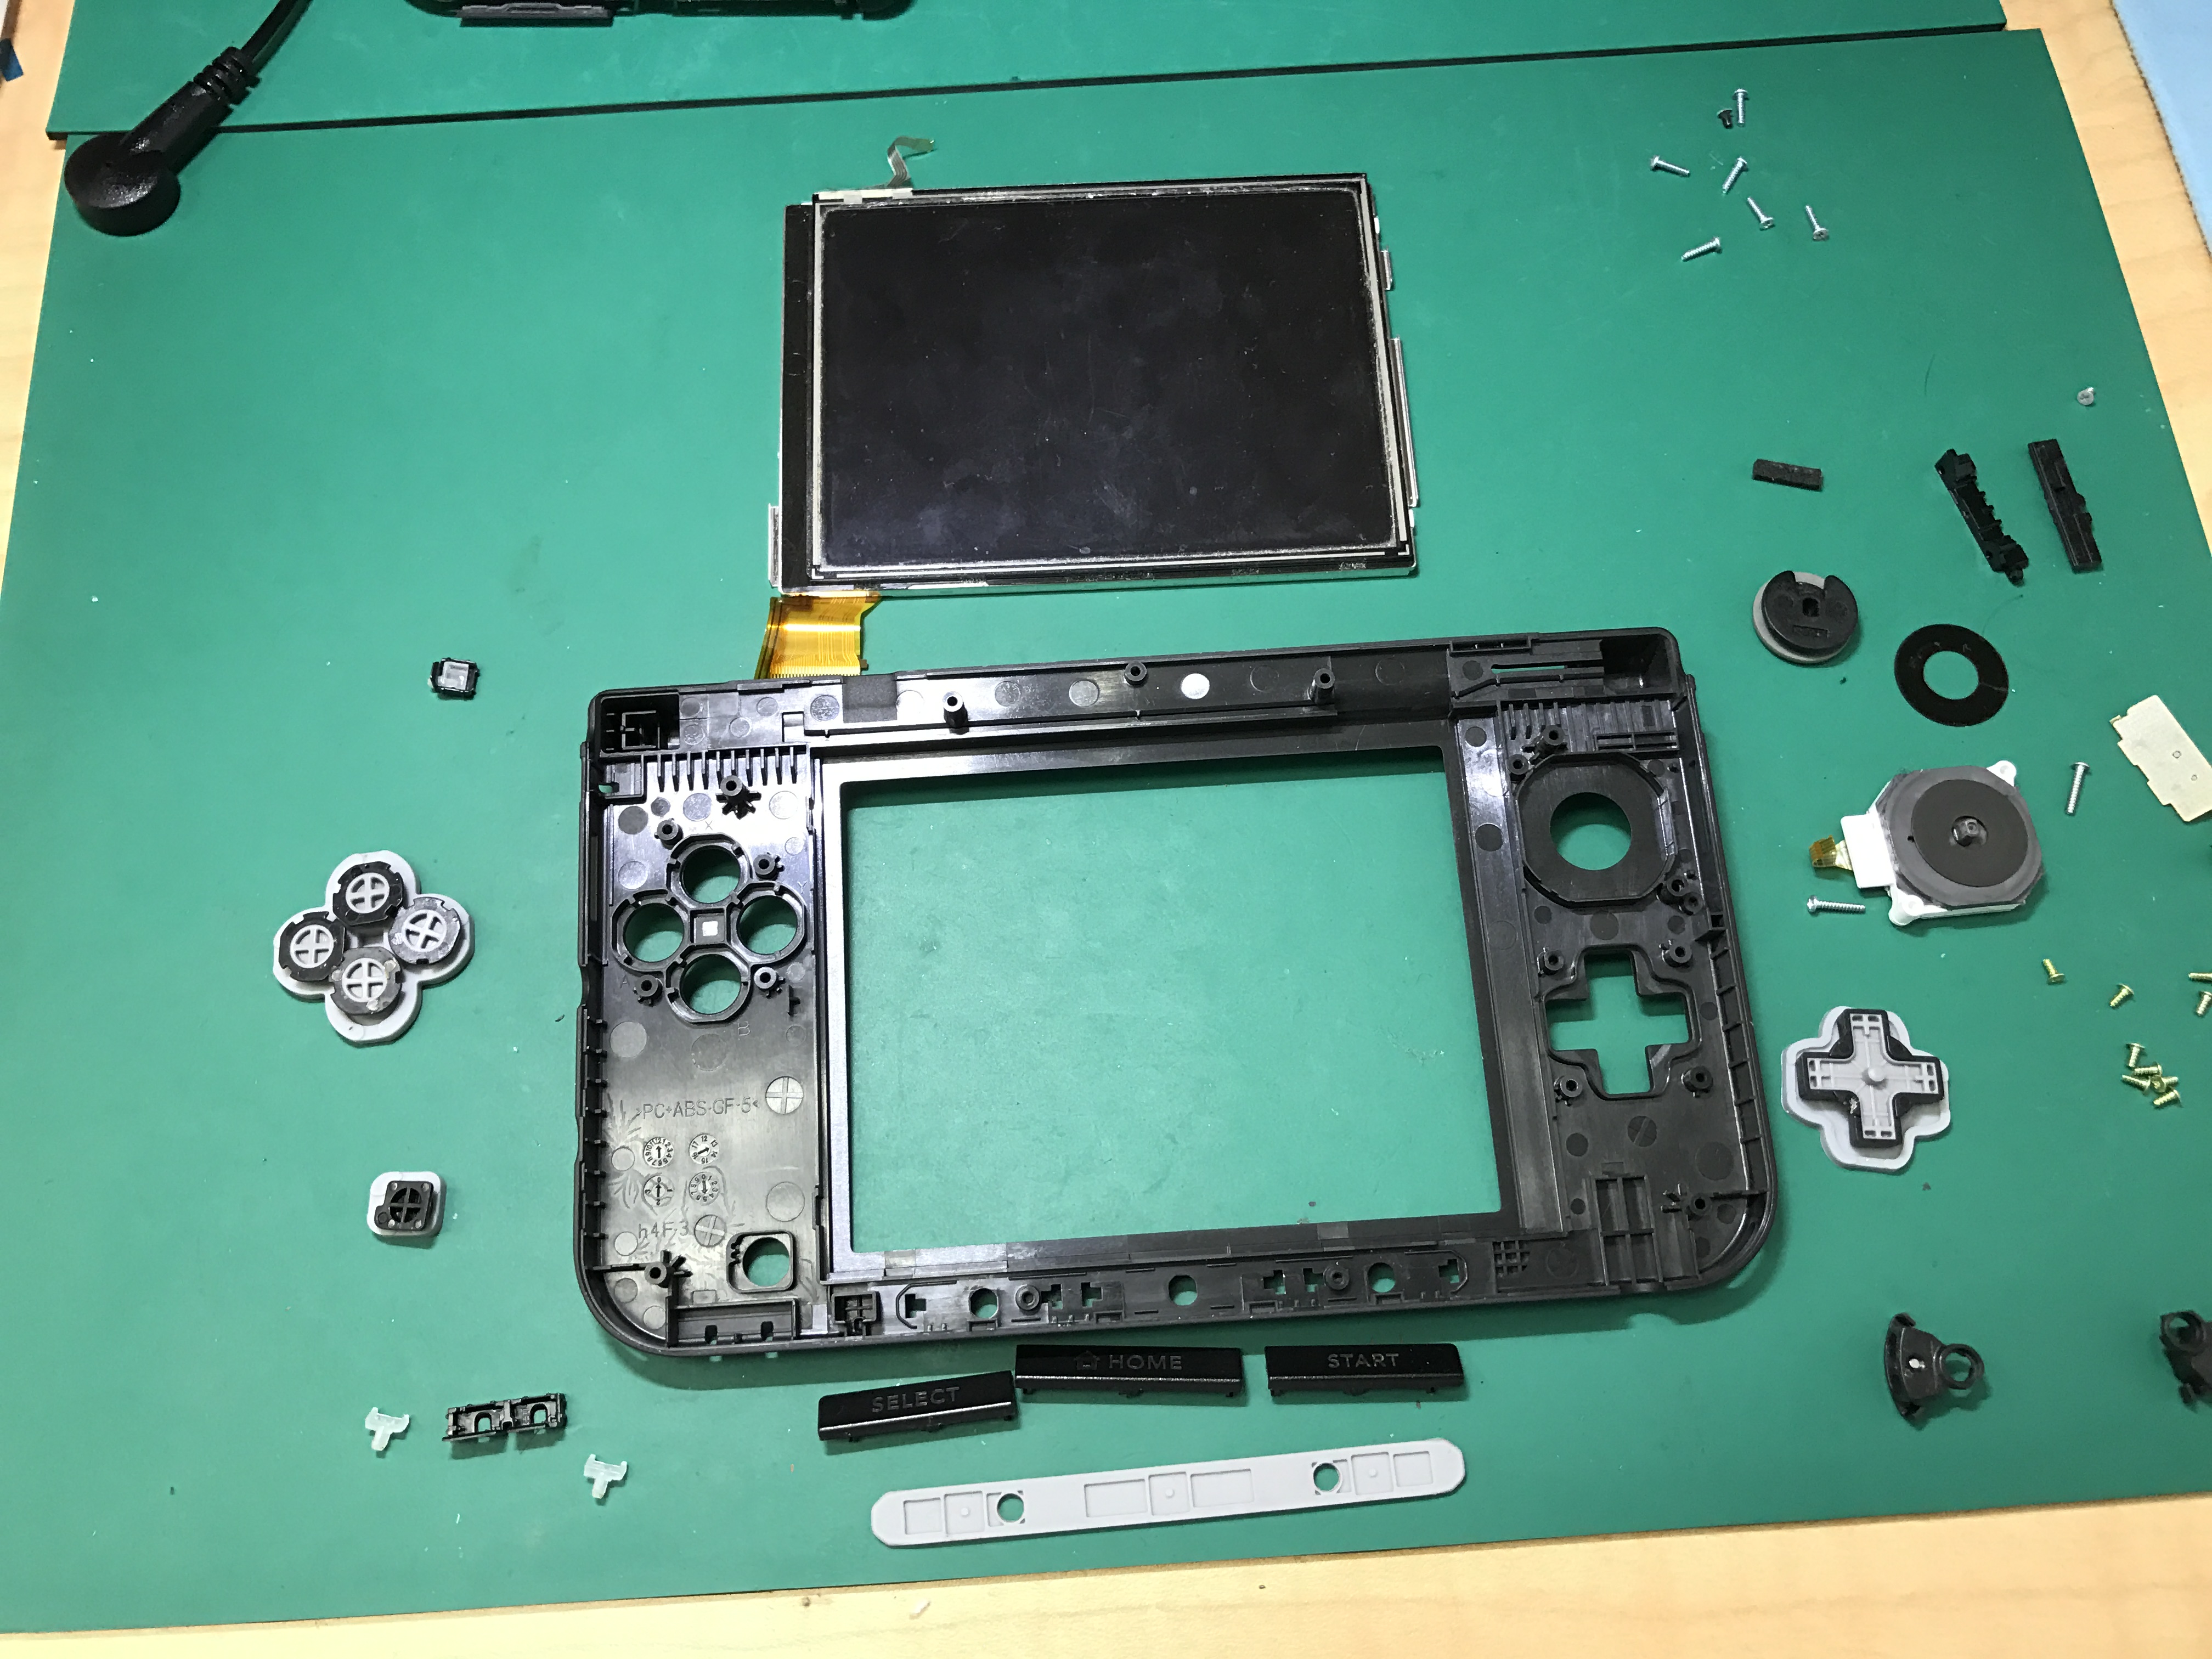 3dsllの折りたたみ部分が割れてグラグラの状態を修理 和歌山 Switch Nintendo3ds Psp 修理のゲームホスピタル Switch Nintendo3ds ニンテンドーds Psp 修理